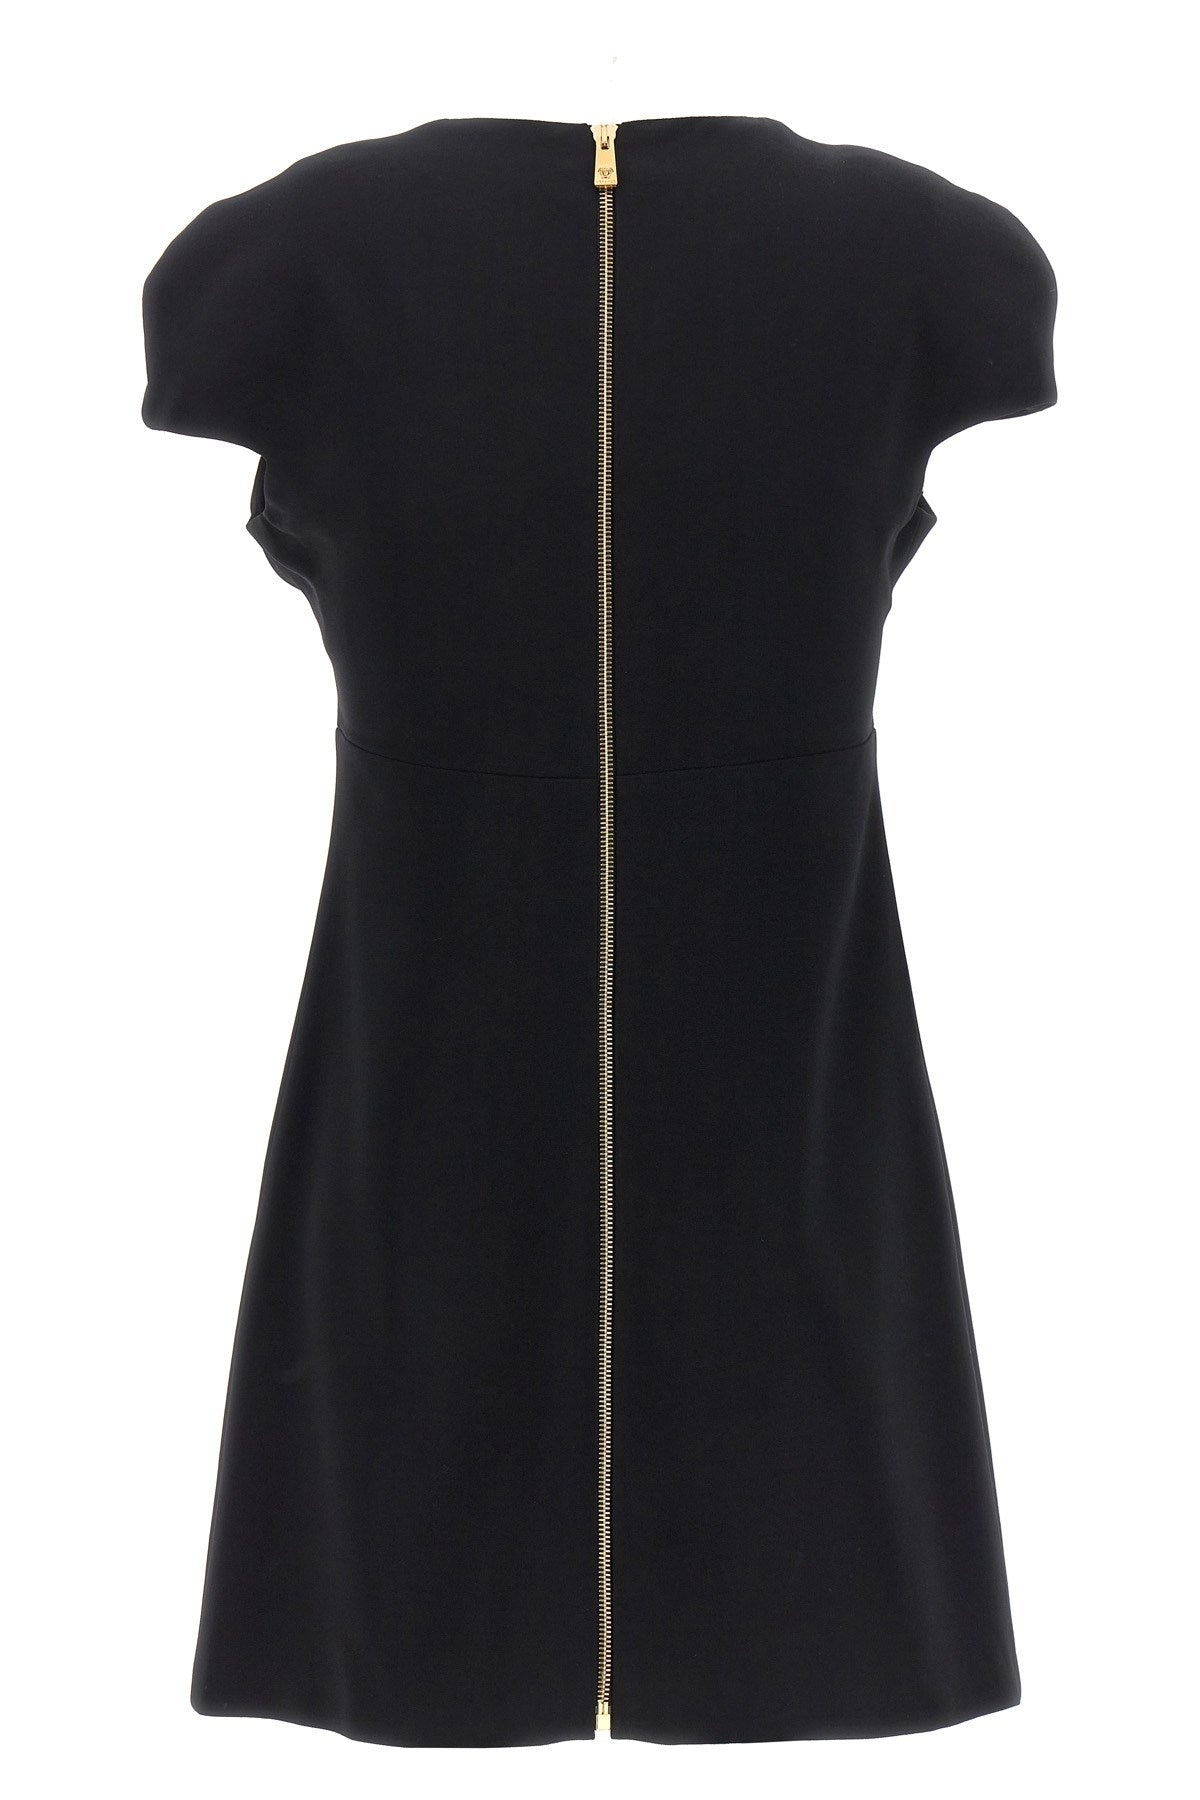 Versace Women Heart-Shaped Neckline Dress - 2